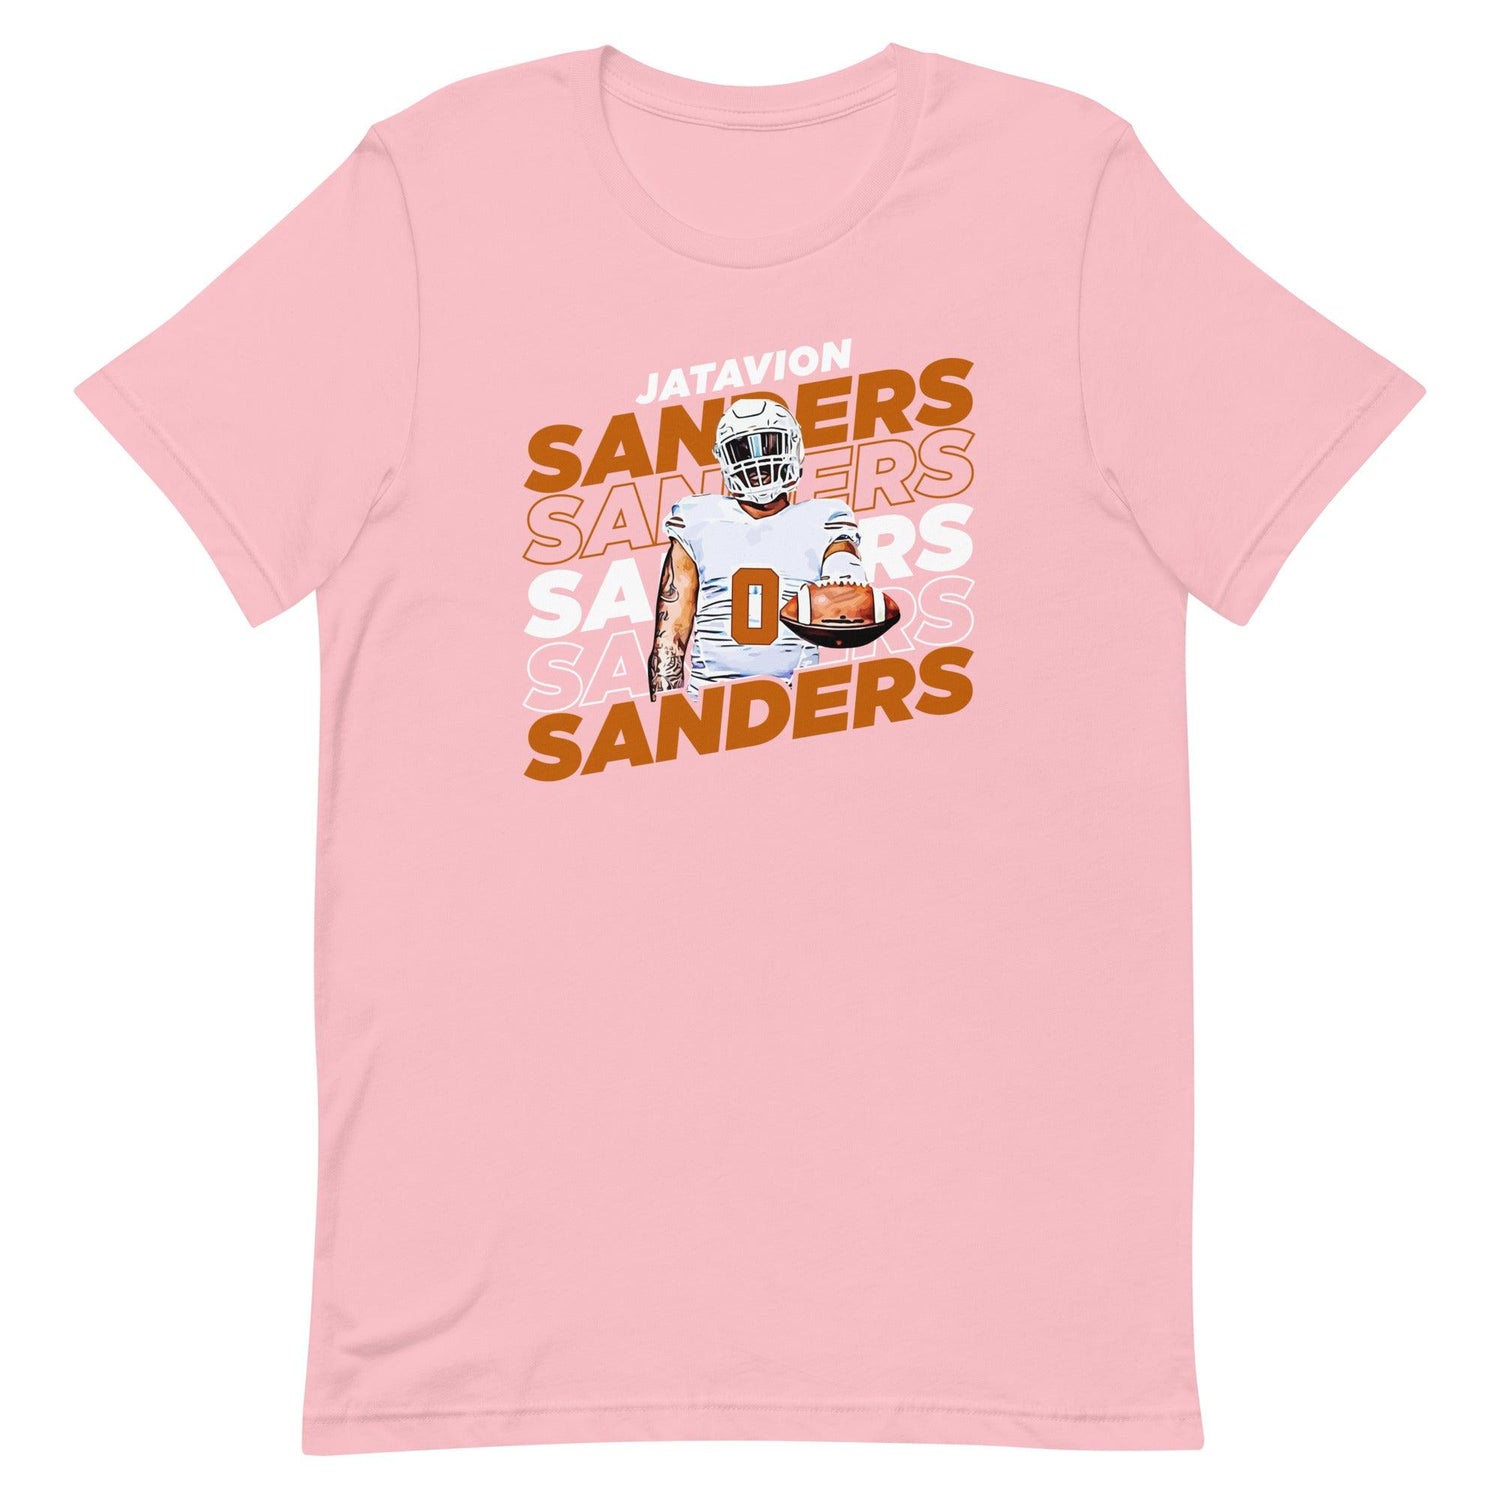 Jatavion Sanders "Repeat" t-shirt - Fan Arch